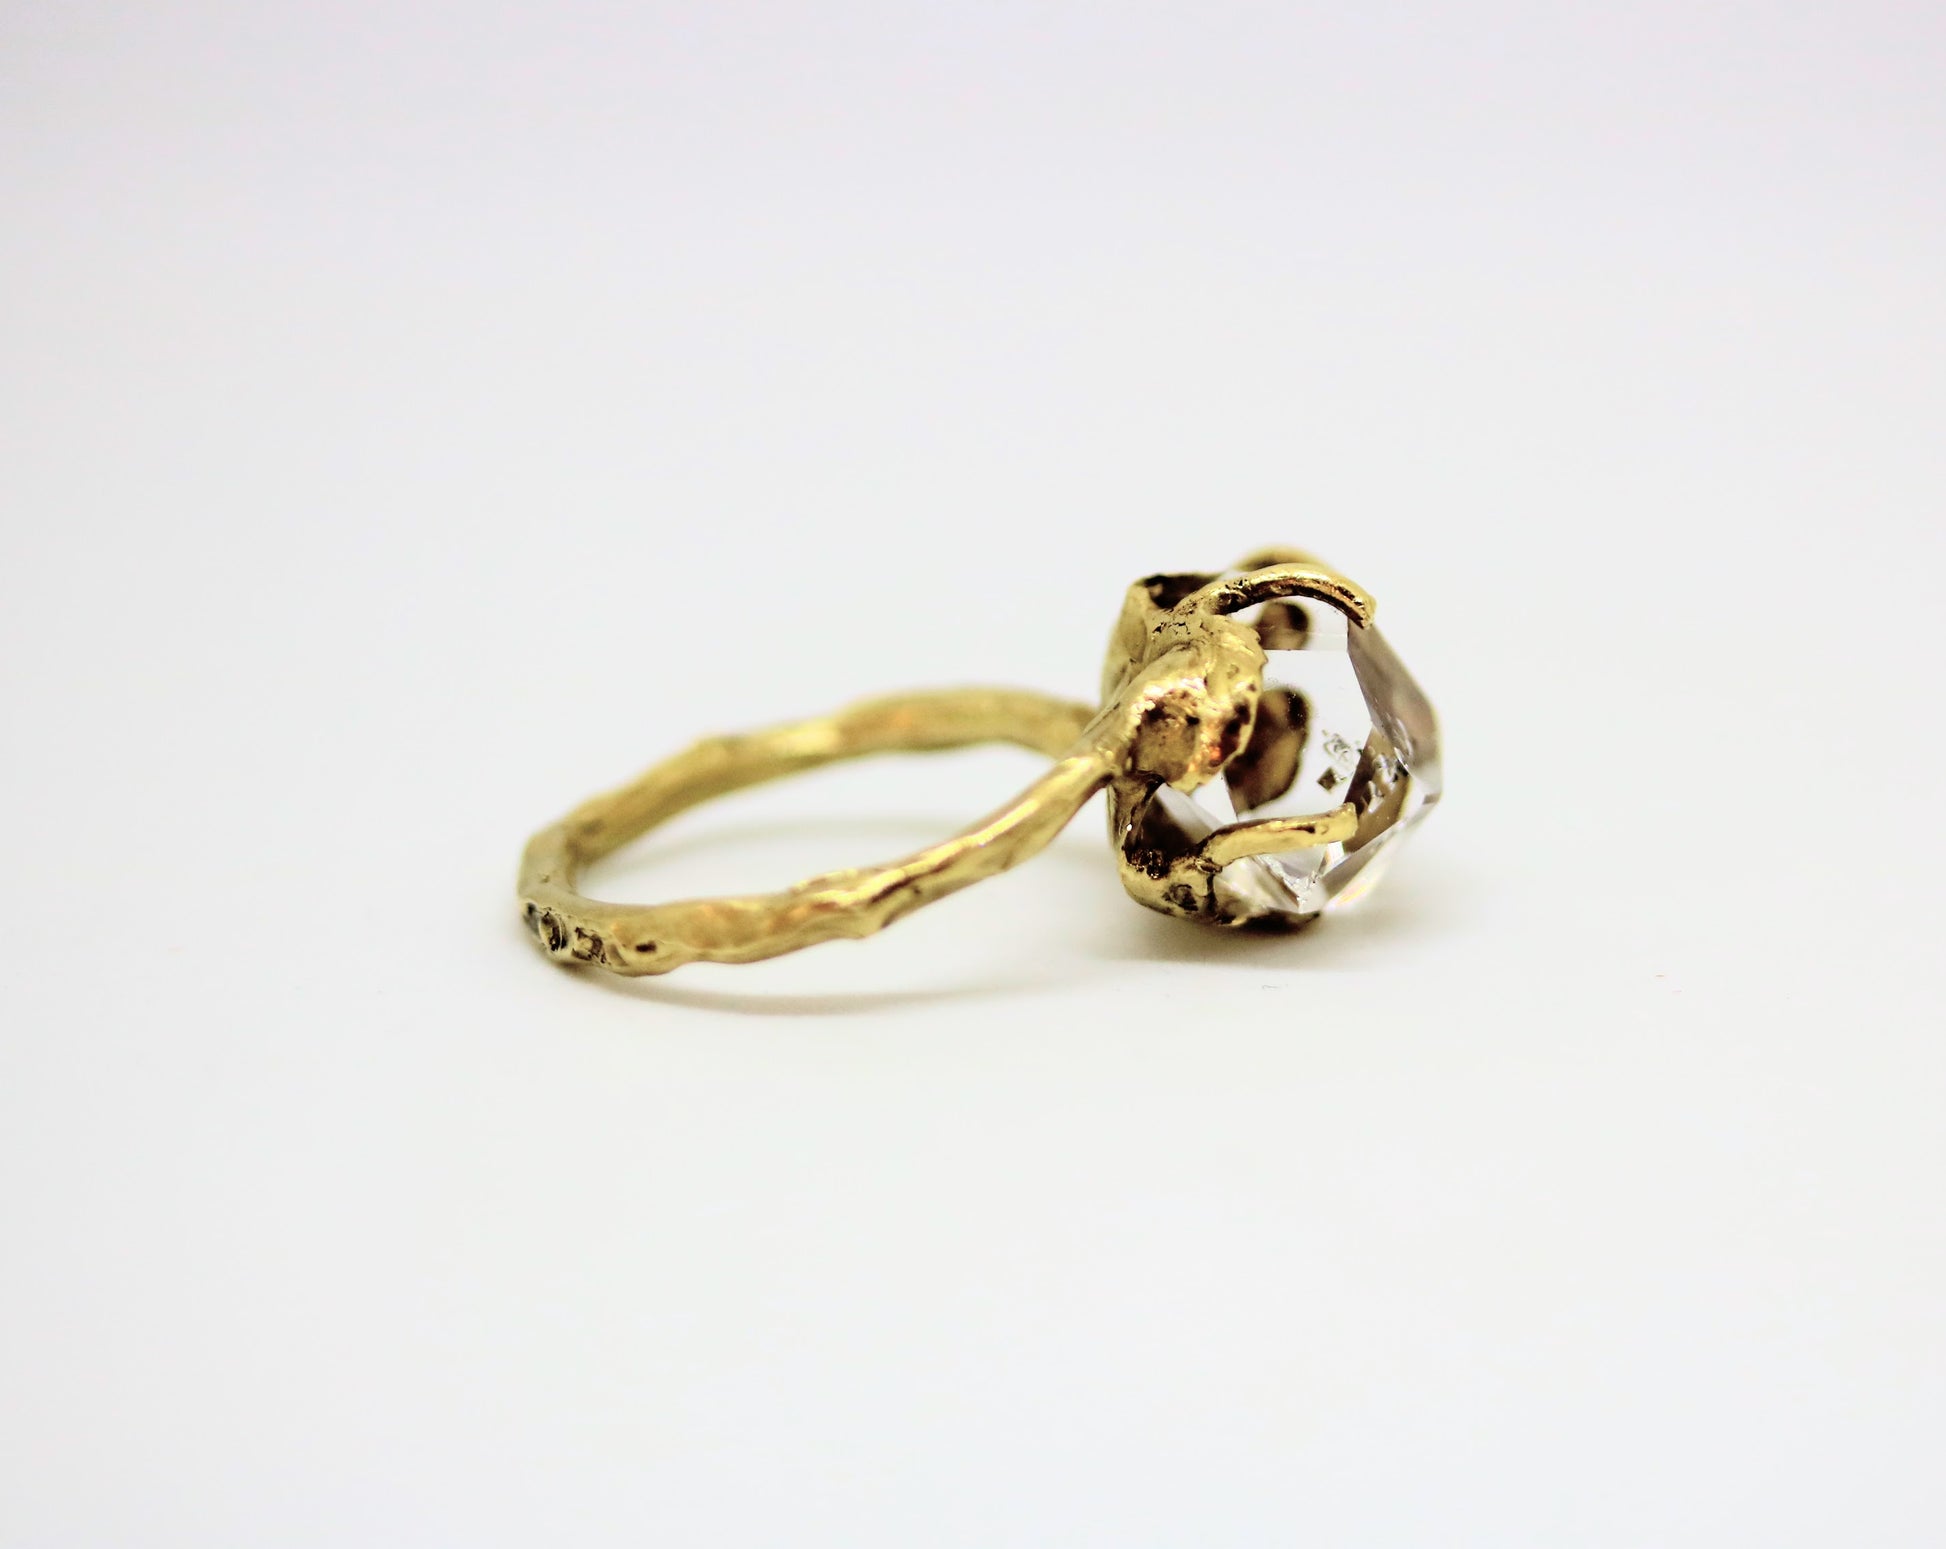 brass ring